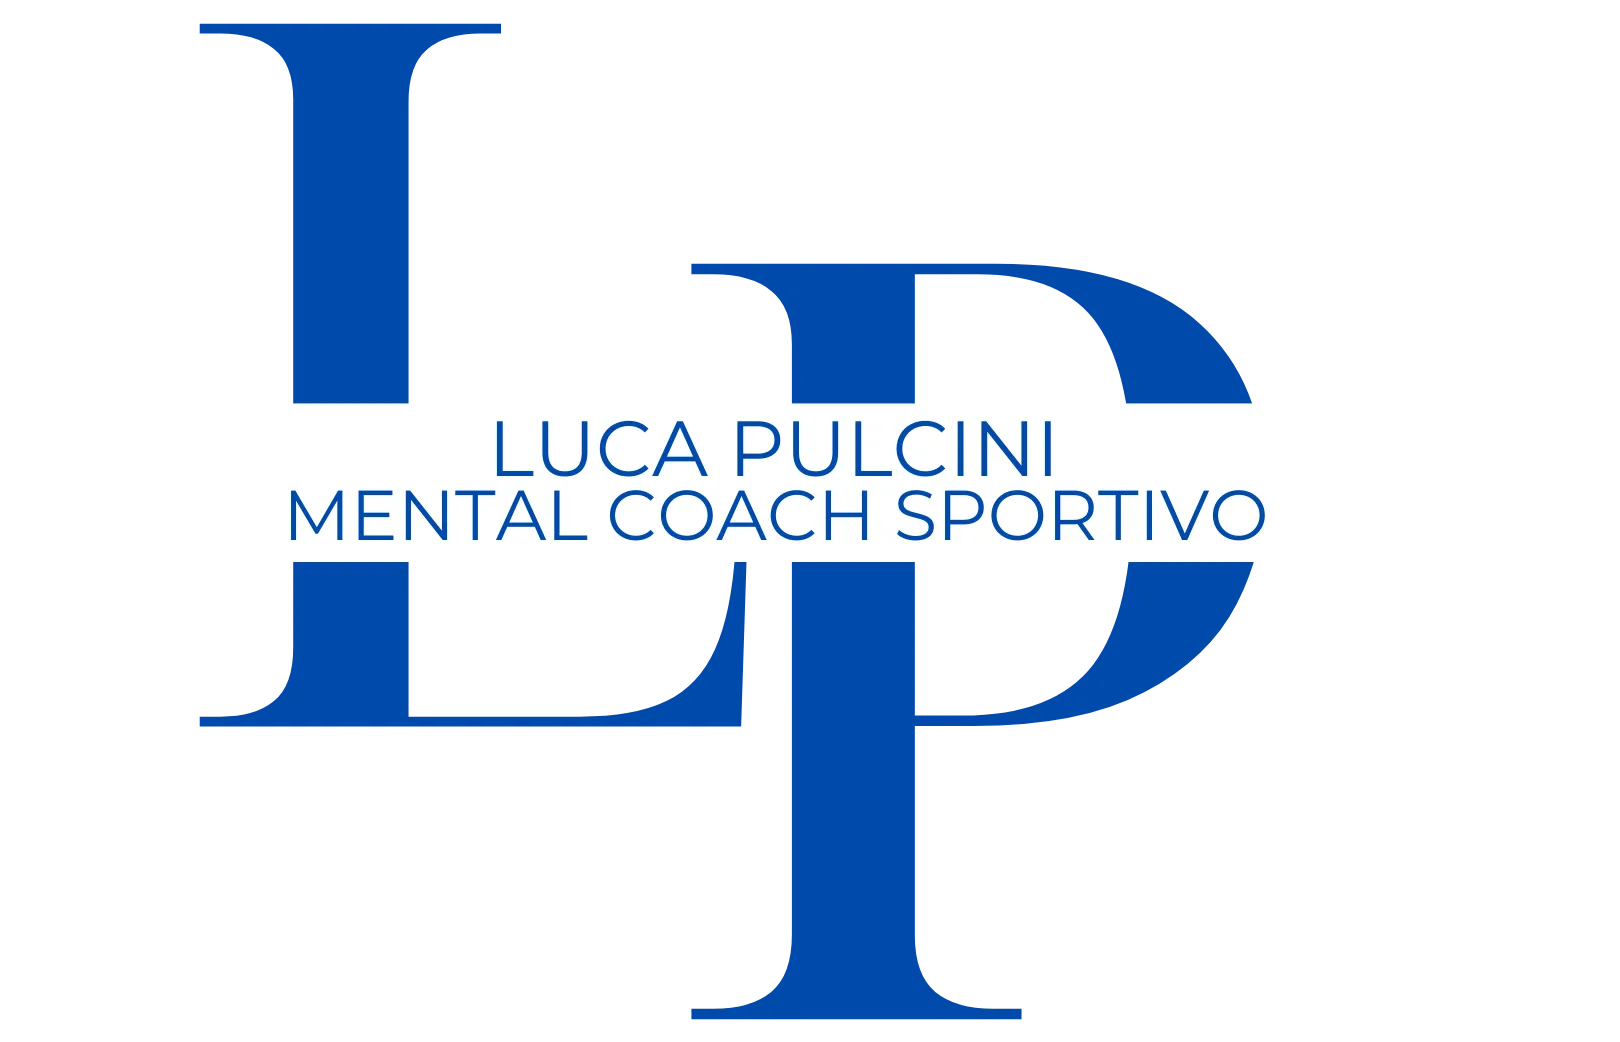 Luca Pulcini